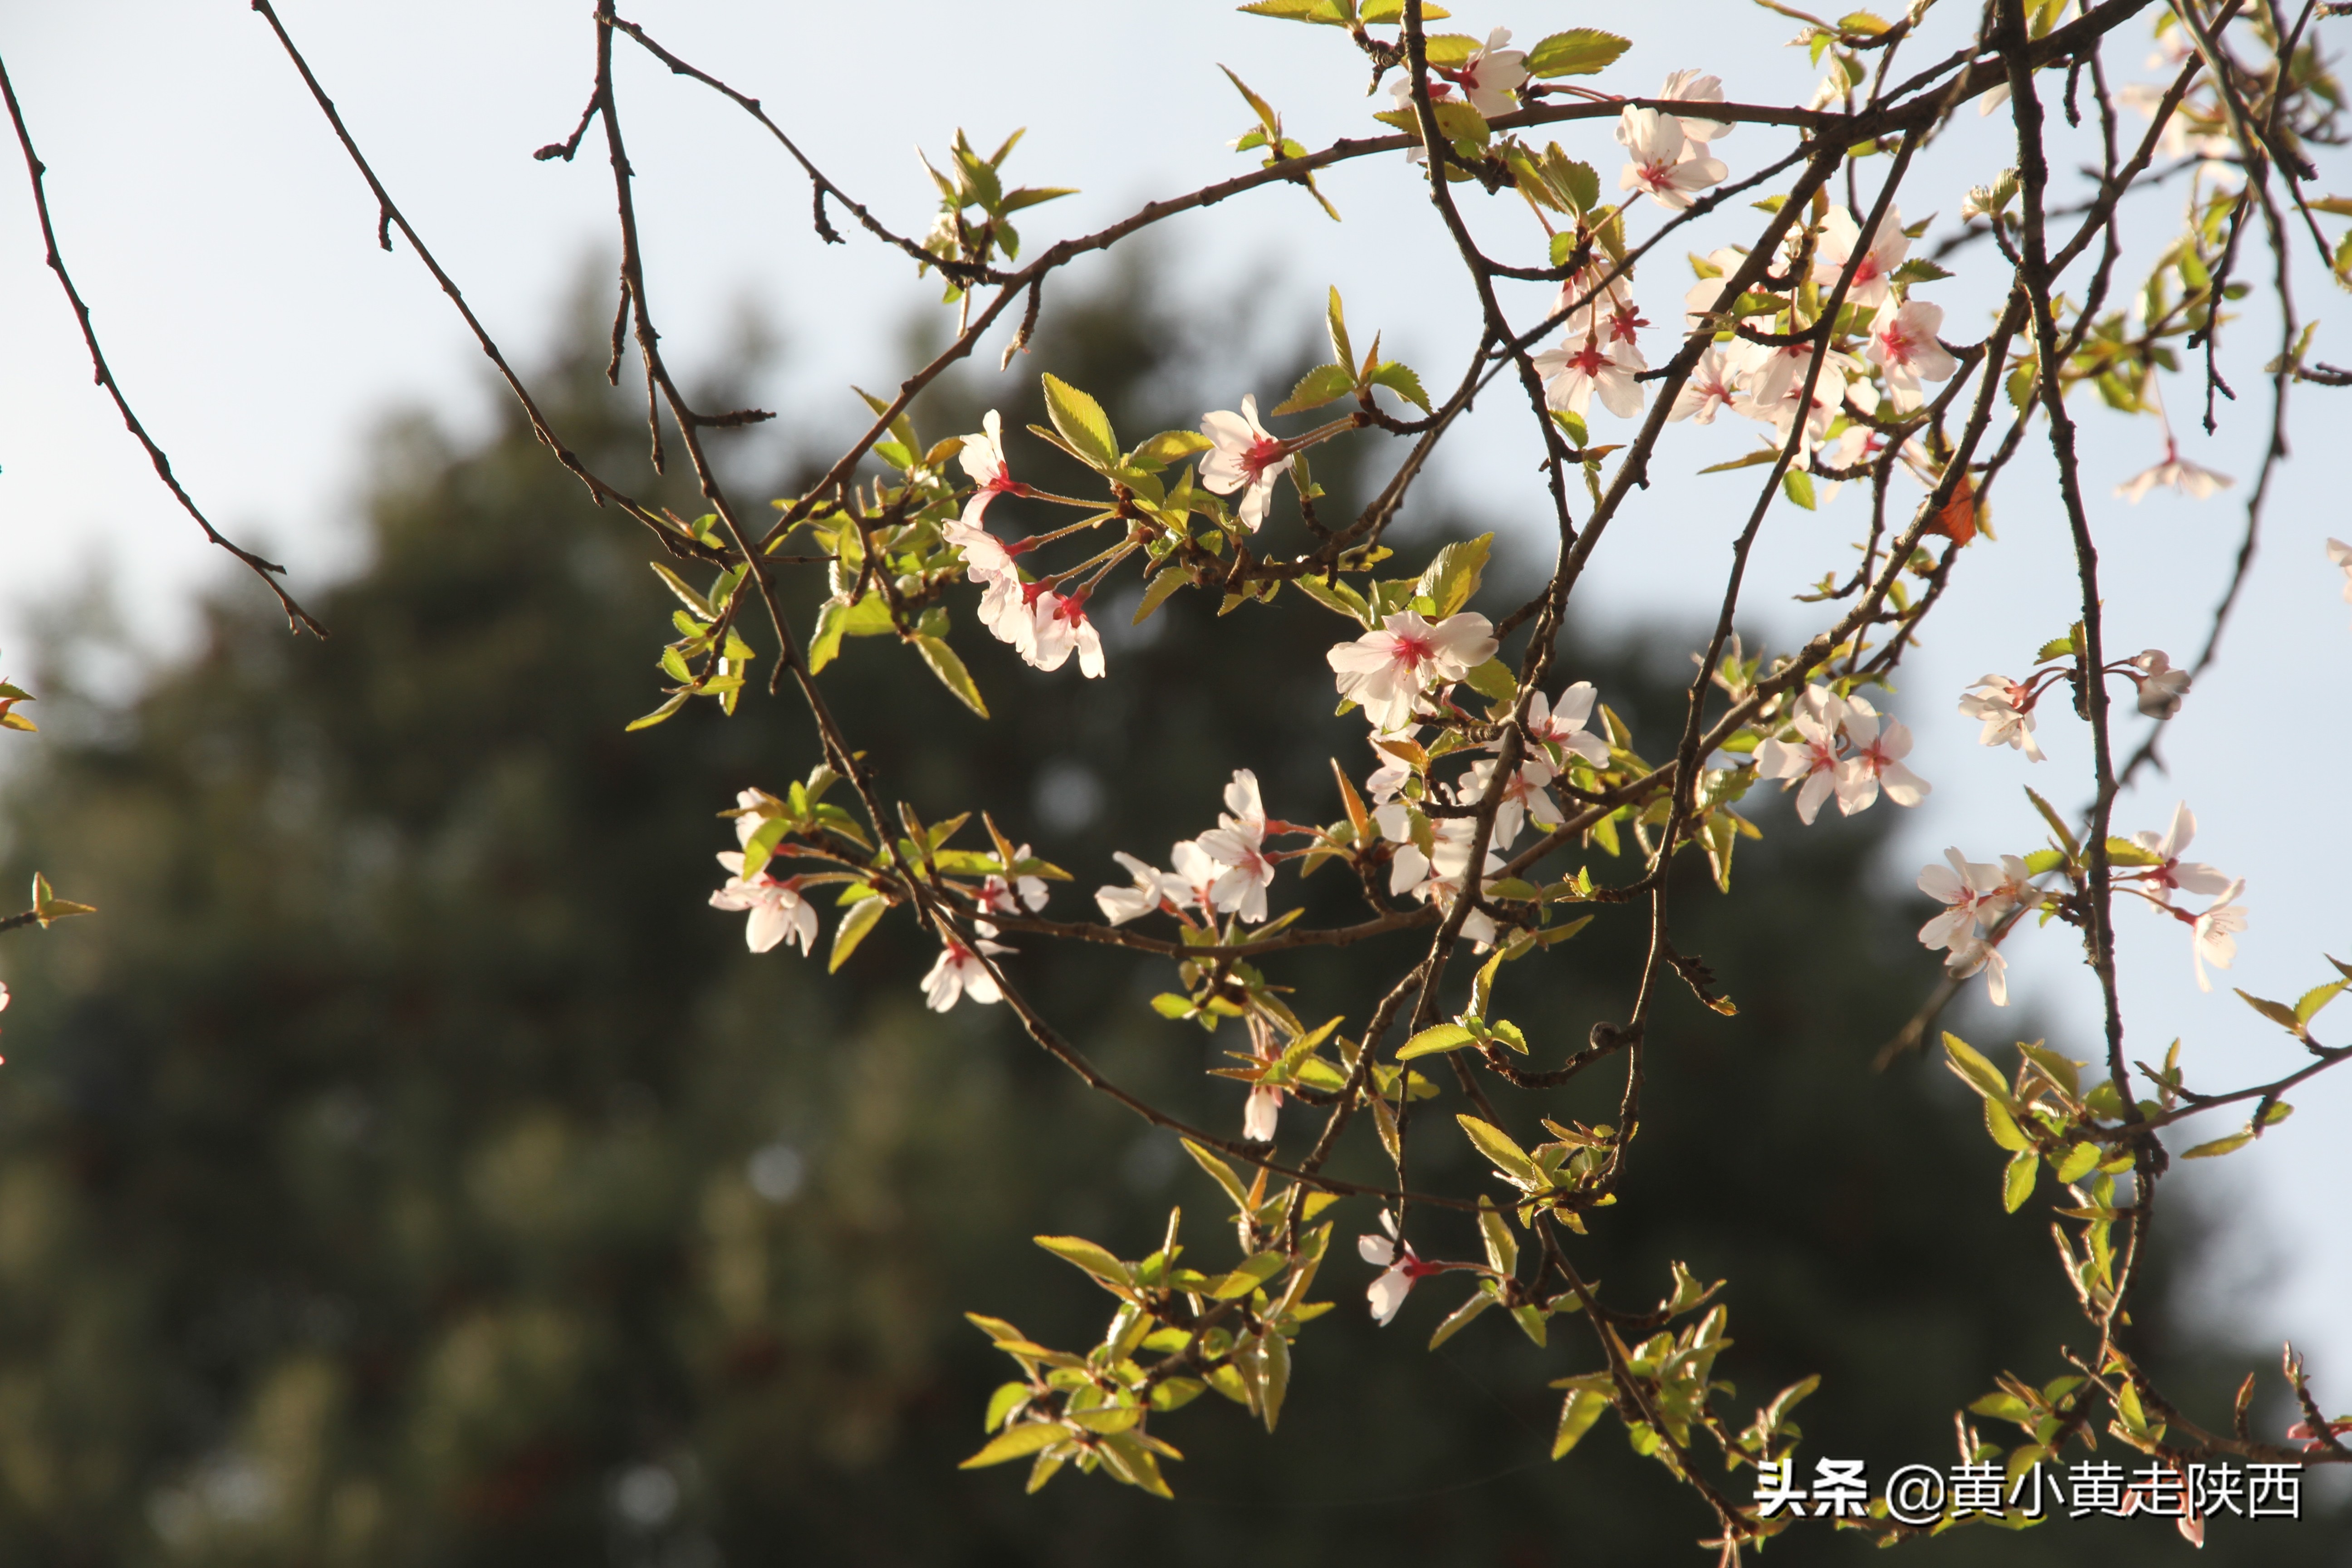 樱花开了！中国十大赏樱地之一的青龙寺，美翻了整个西安！